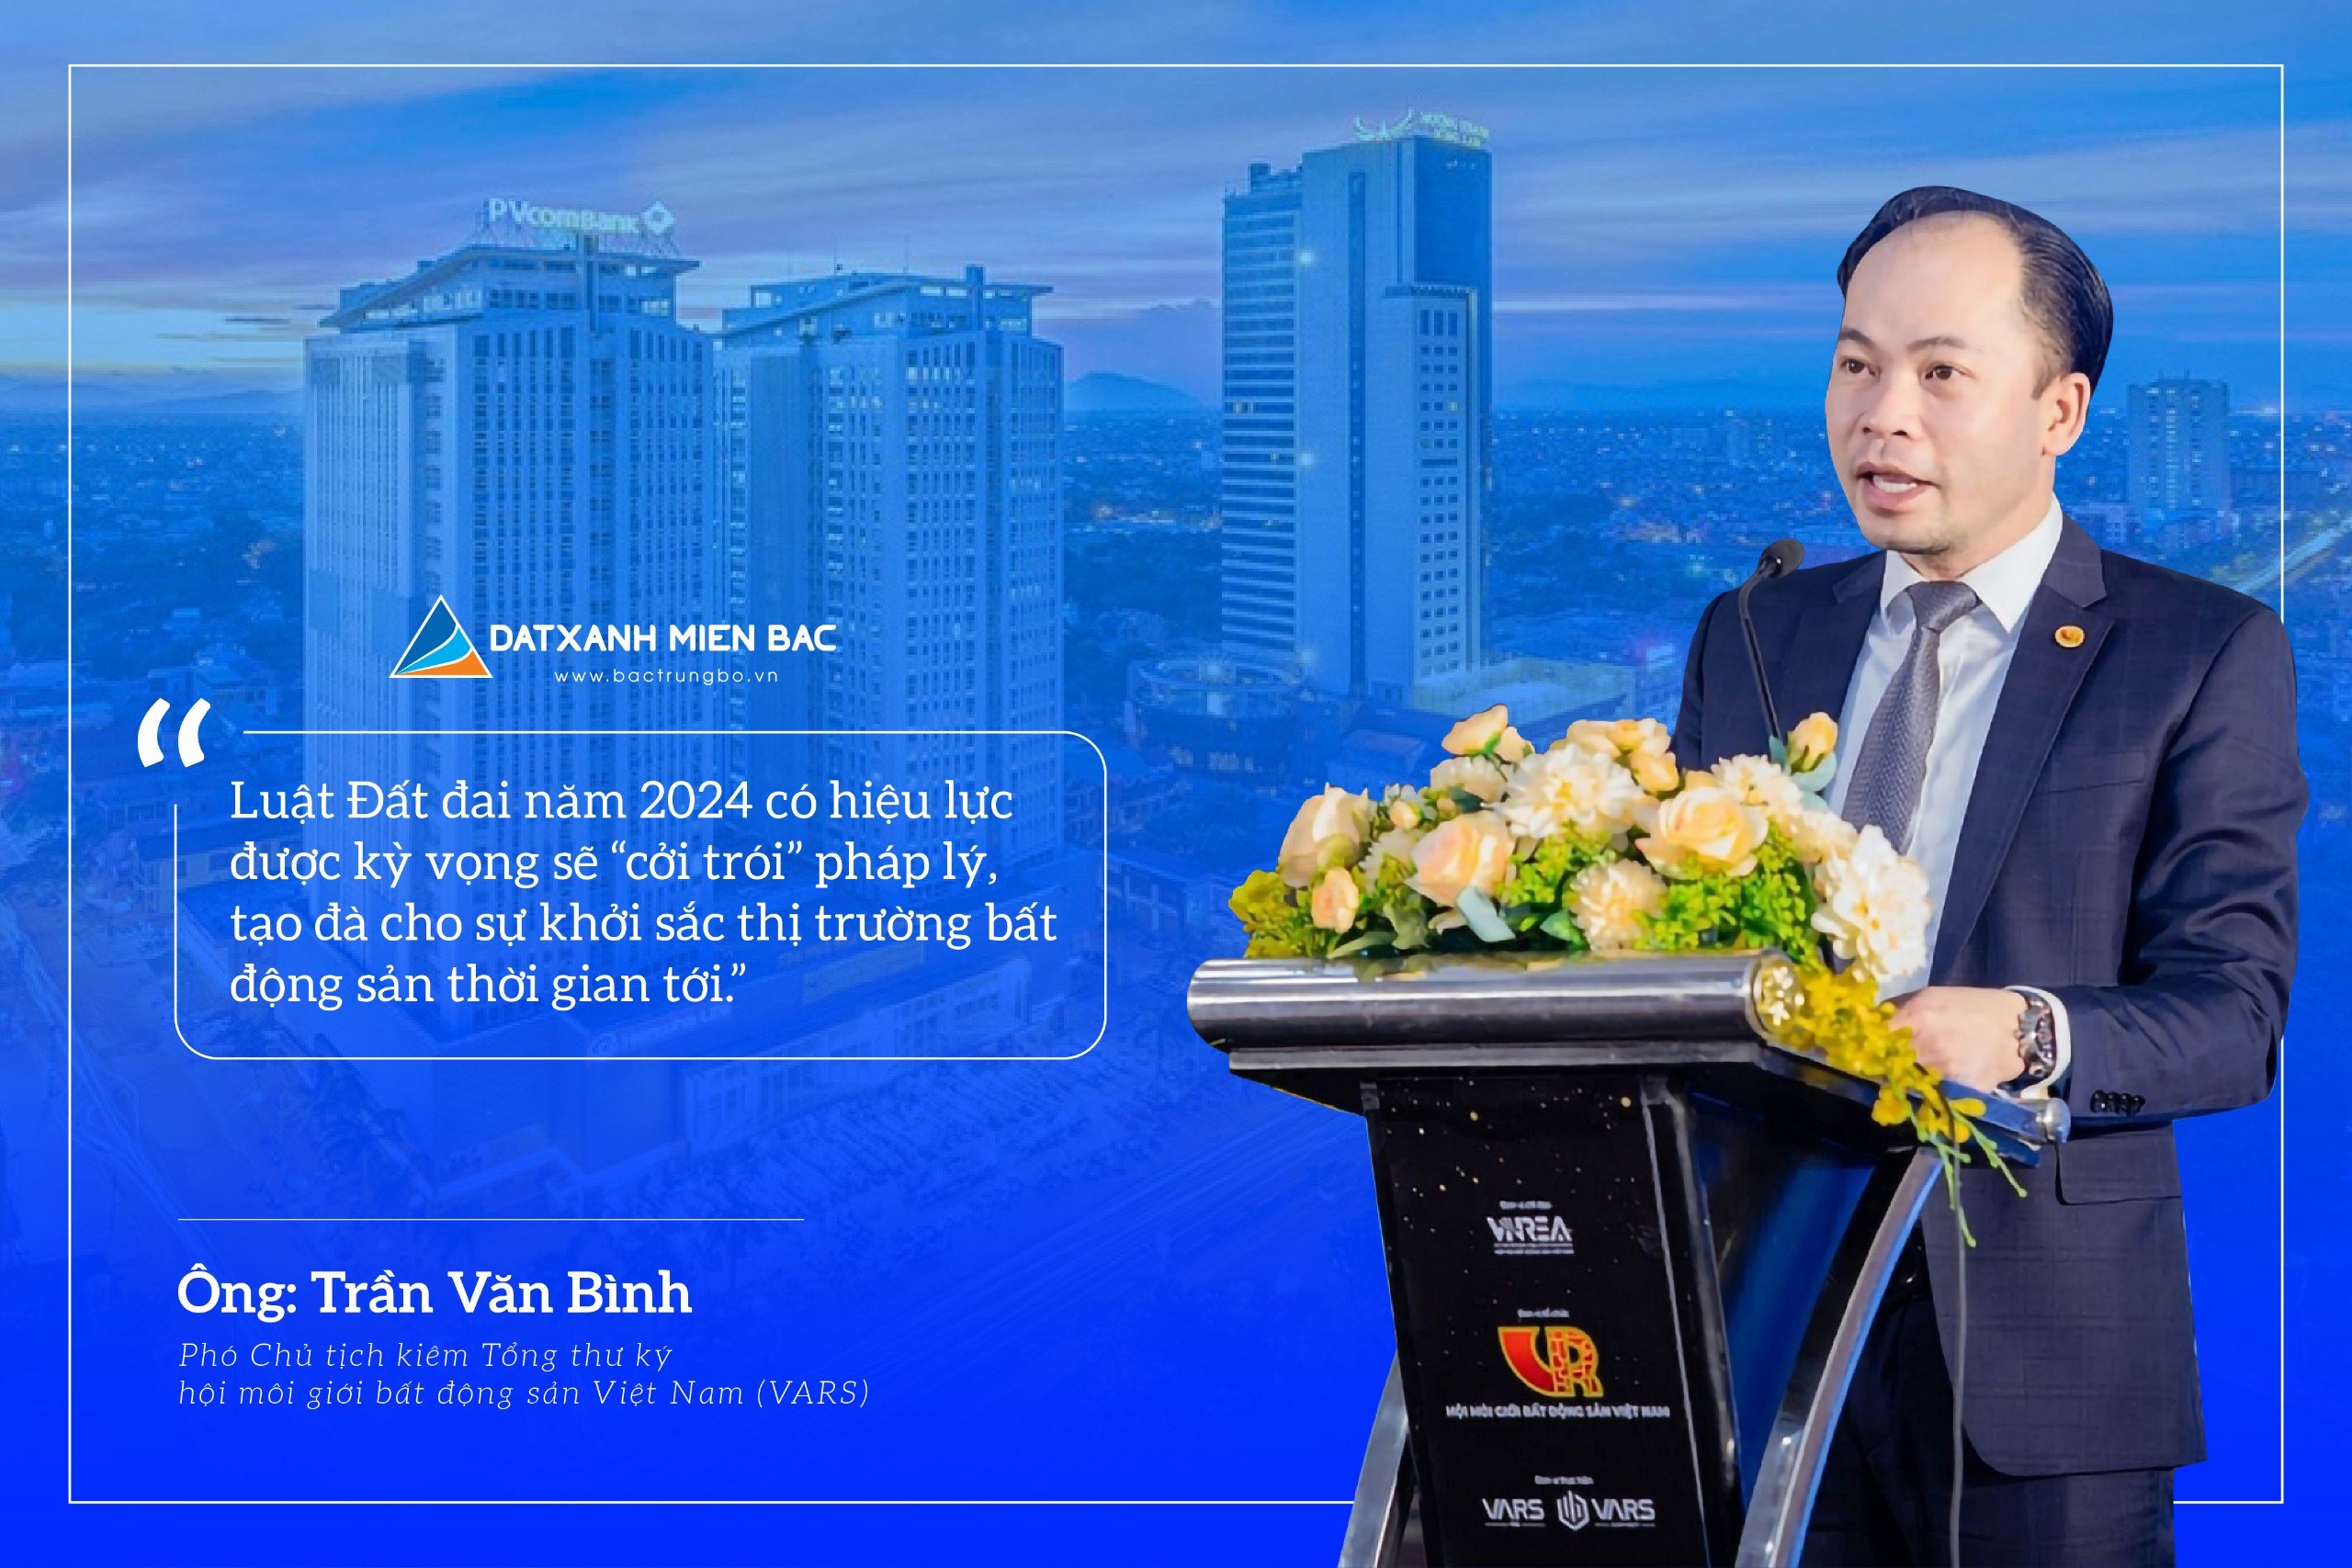 Ông Trần Văn Bình - Phó Chủ tịch kiêm Tổng thư ký Hội Môi giới Bất động sản (BĐS) Việt Nam (VARS) đánh giá về sự bật tăng mạnh mẽ của thị trường BĐS trong thời gian tới.